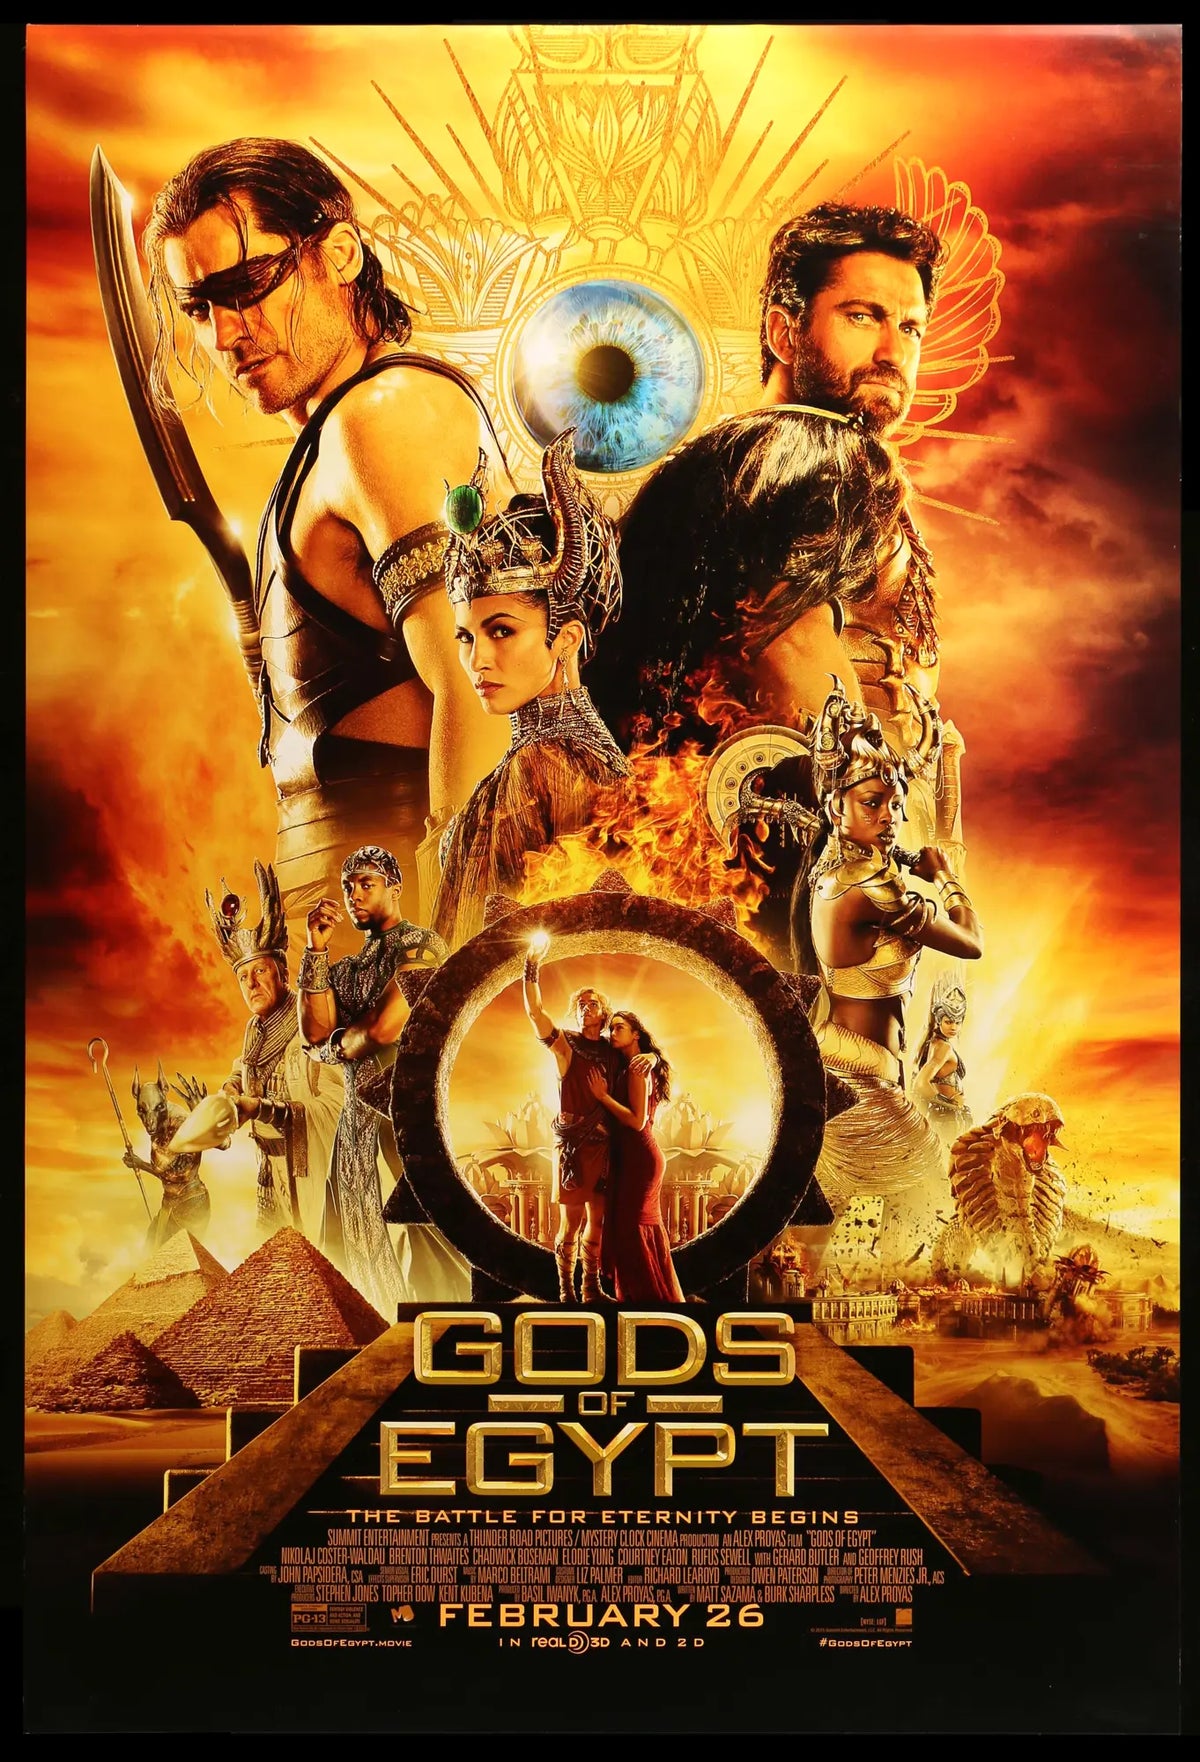 Gods of Egypt (2016) original movie poster for sale at Original Film Art